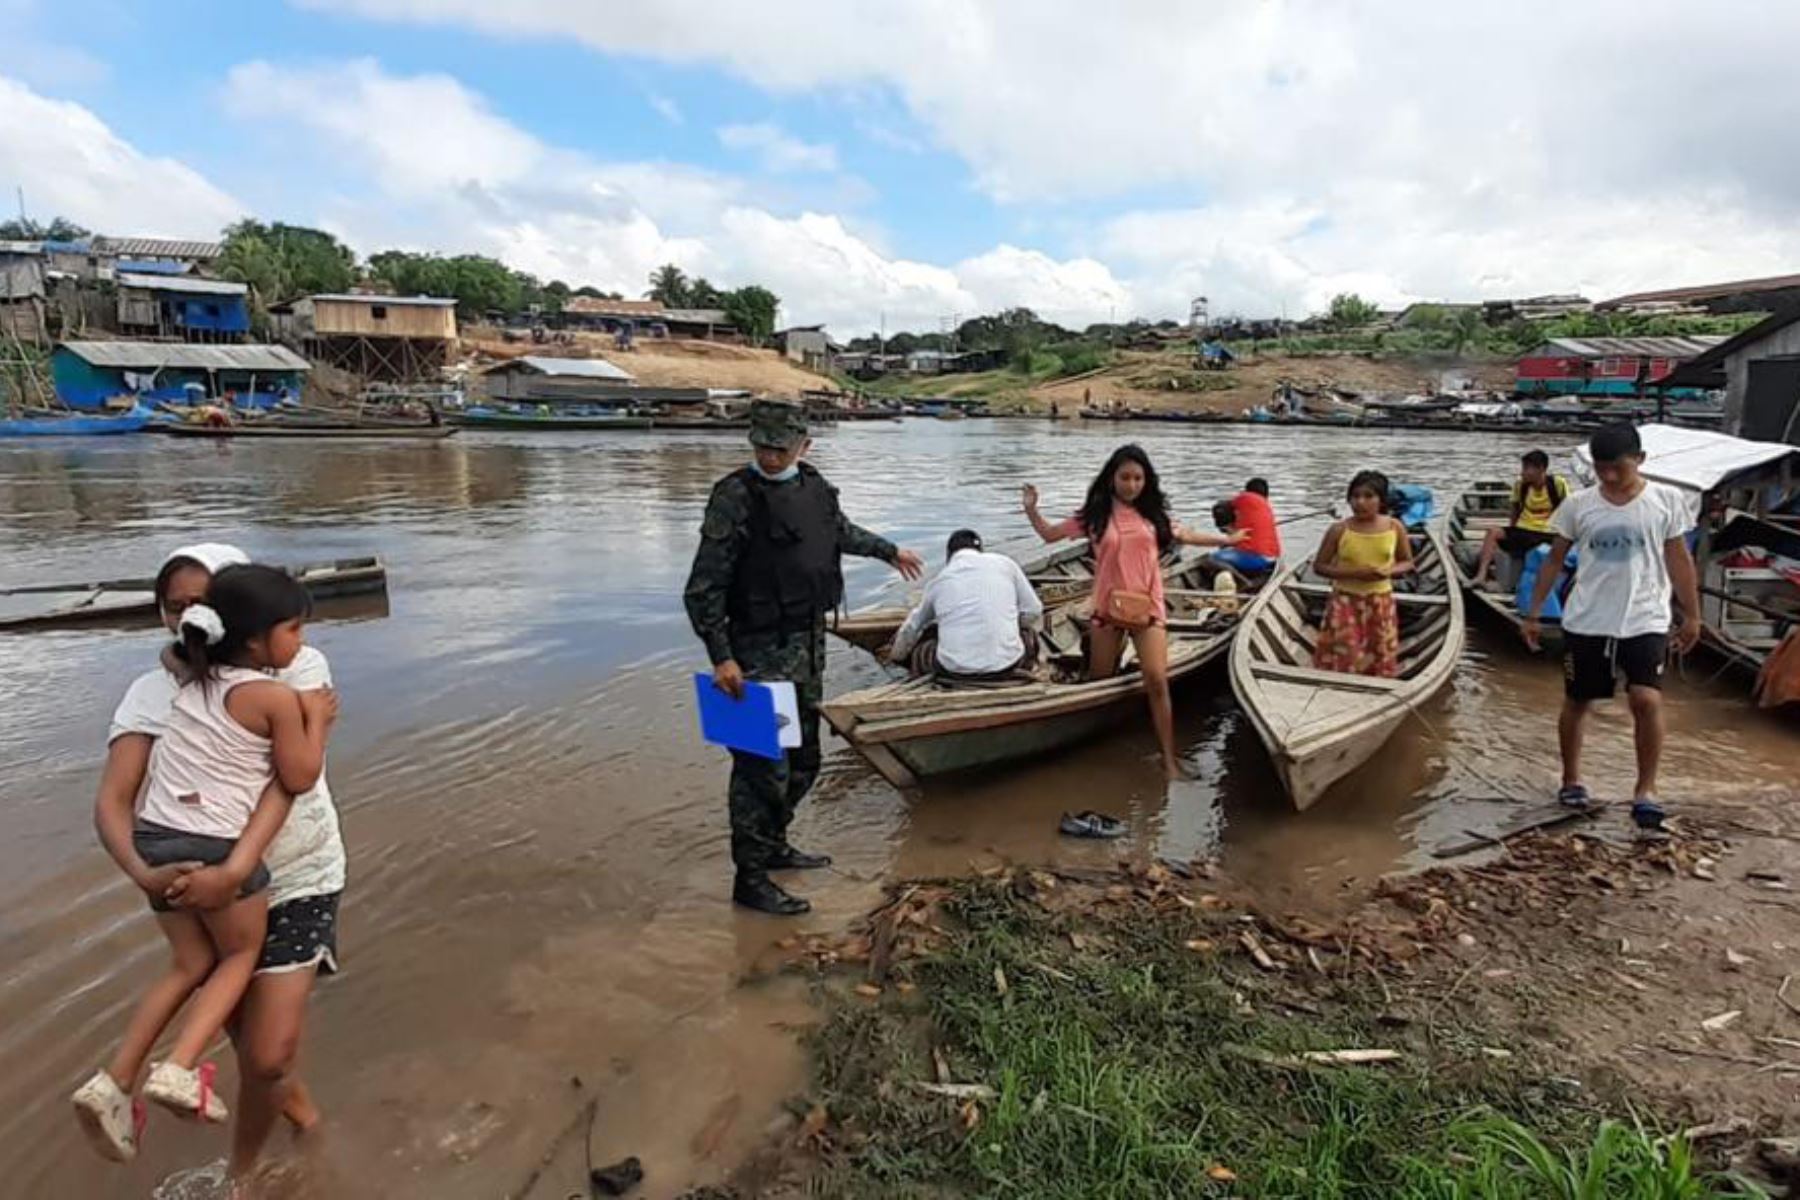 La tragedia ocurrió alrededor de las 16:30 horas del jueves 20 de agosto, cerca de la boca del canal del Puinahua,